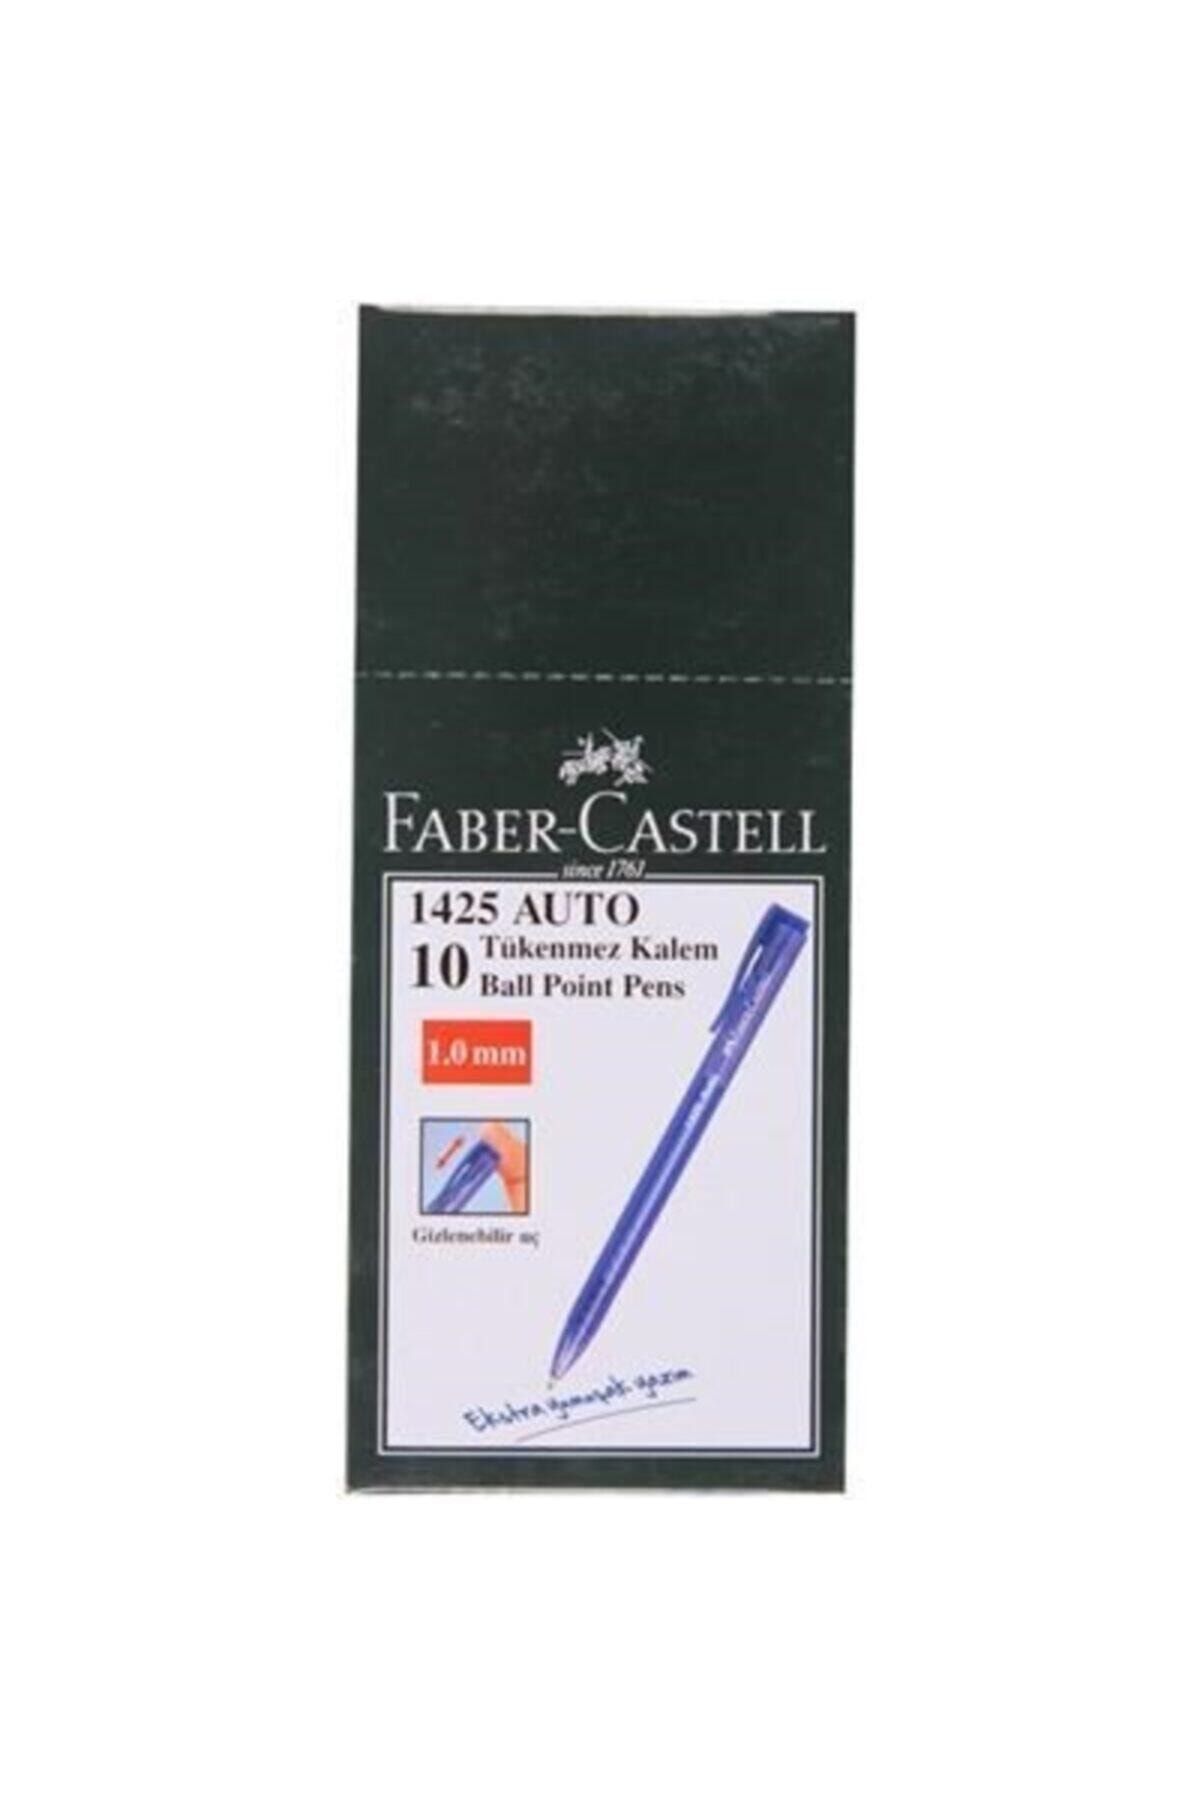 Faber Castell 1425 Auto 1.0 Mm Mavi Tükenmez Kalem 10'lu Kutu